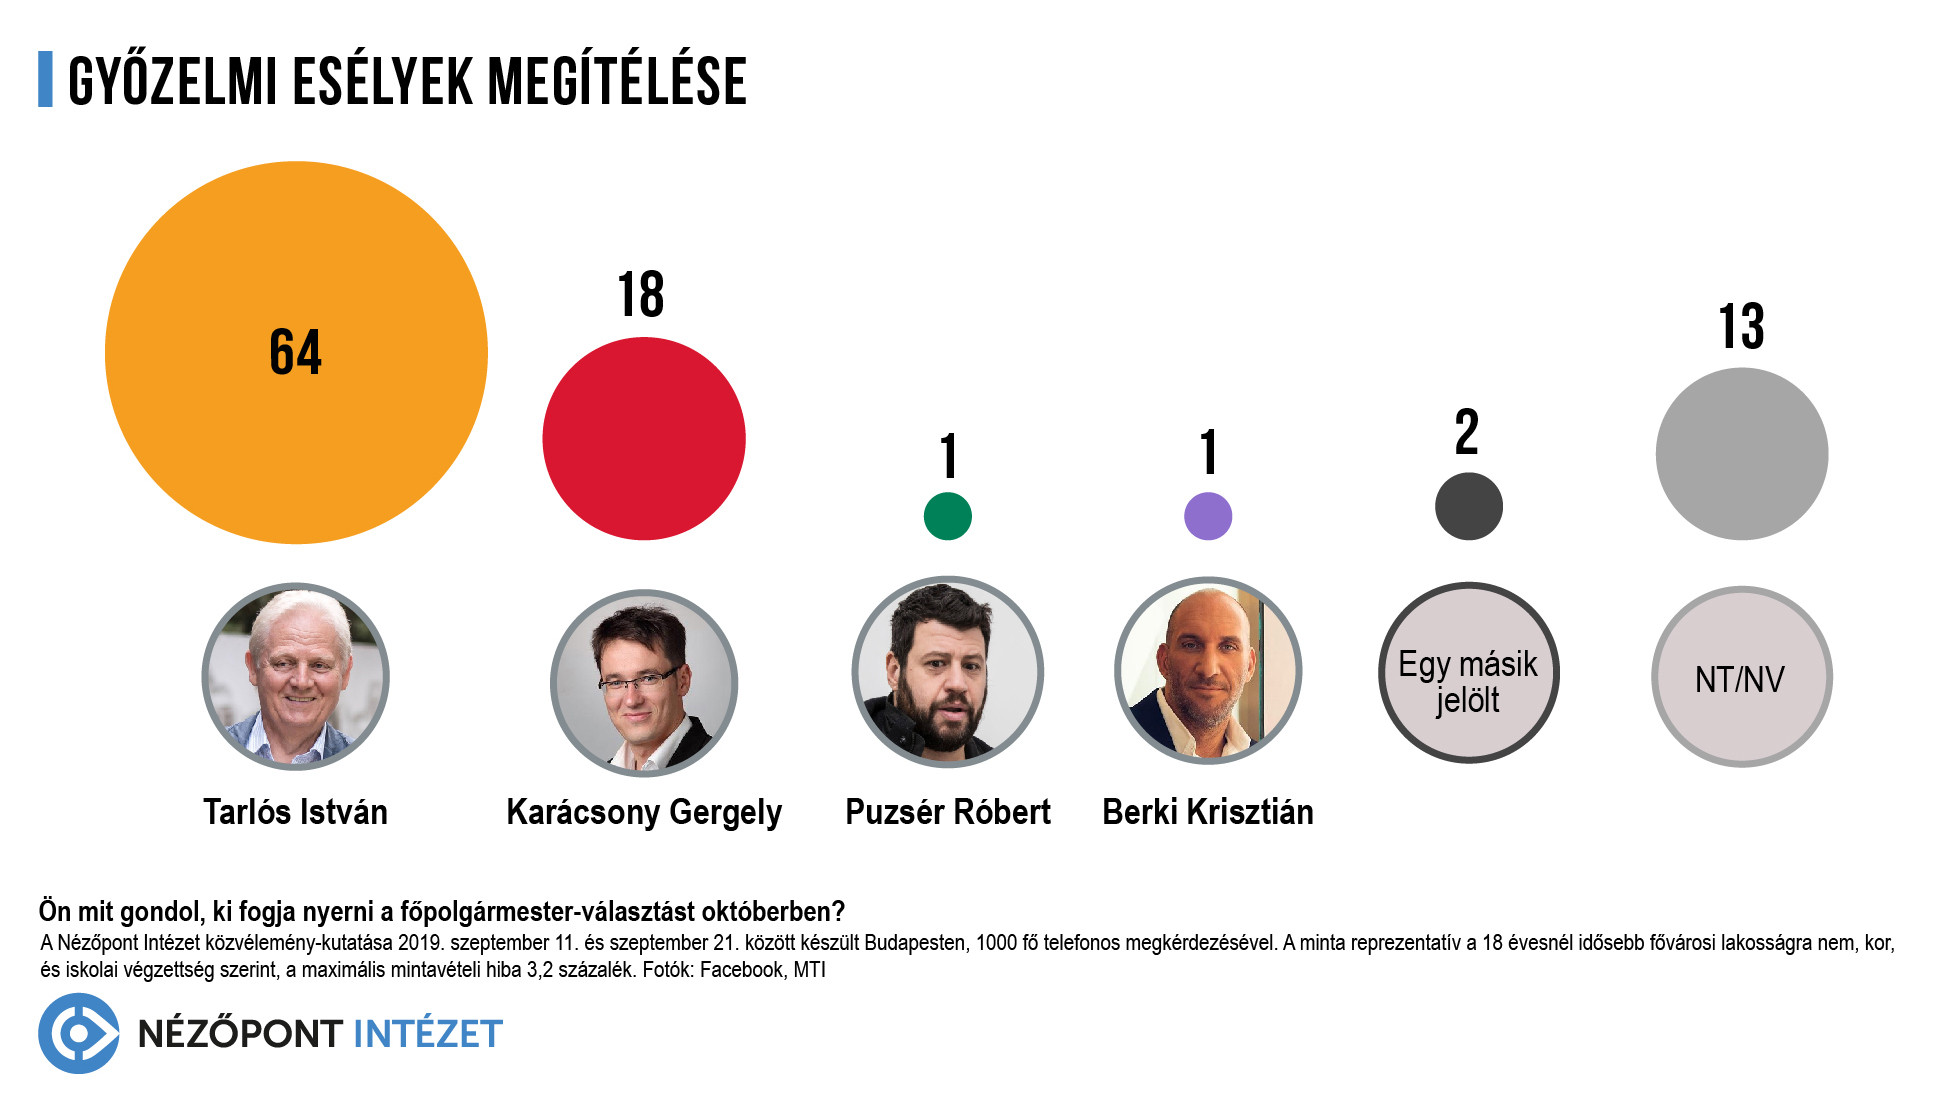 A közelgő választáson egyre több budapesti gondolja, hogy Tarlós István fog győzni